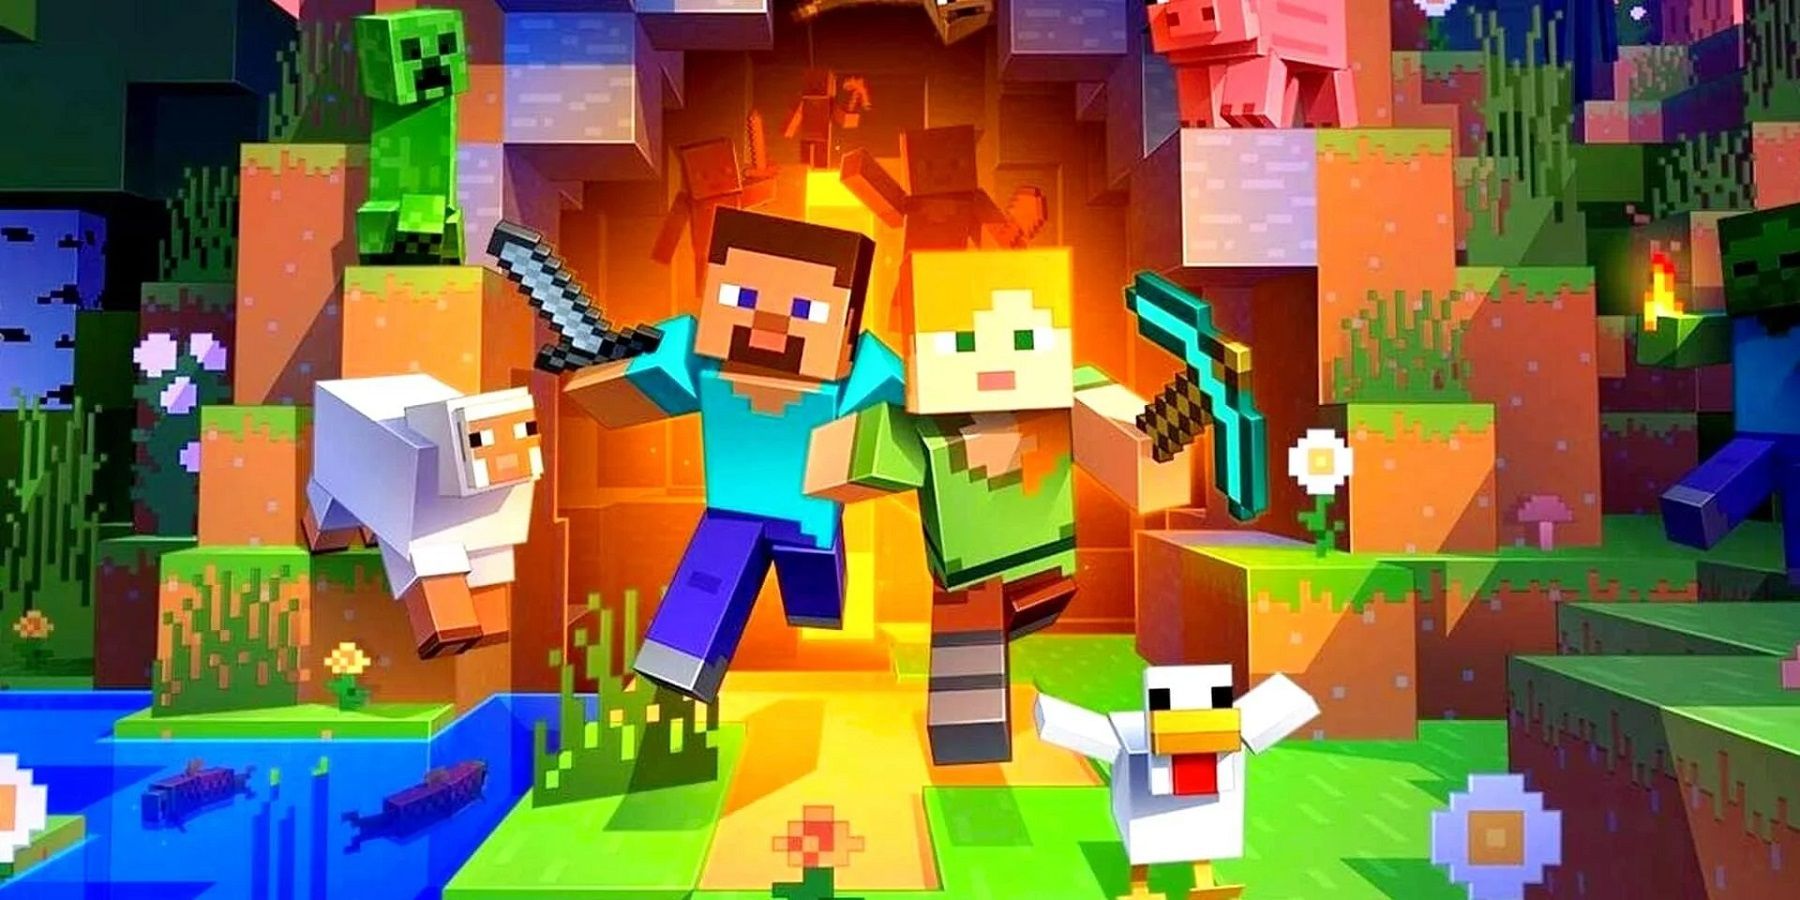 Изображение из Minecraft, показывающее, как Стив и Алекс выбегают из пещеры.